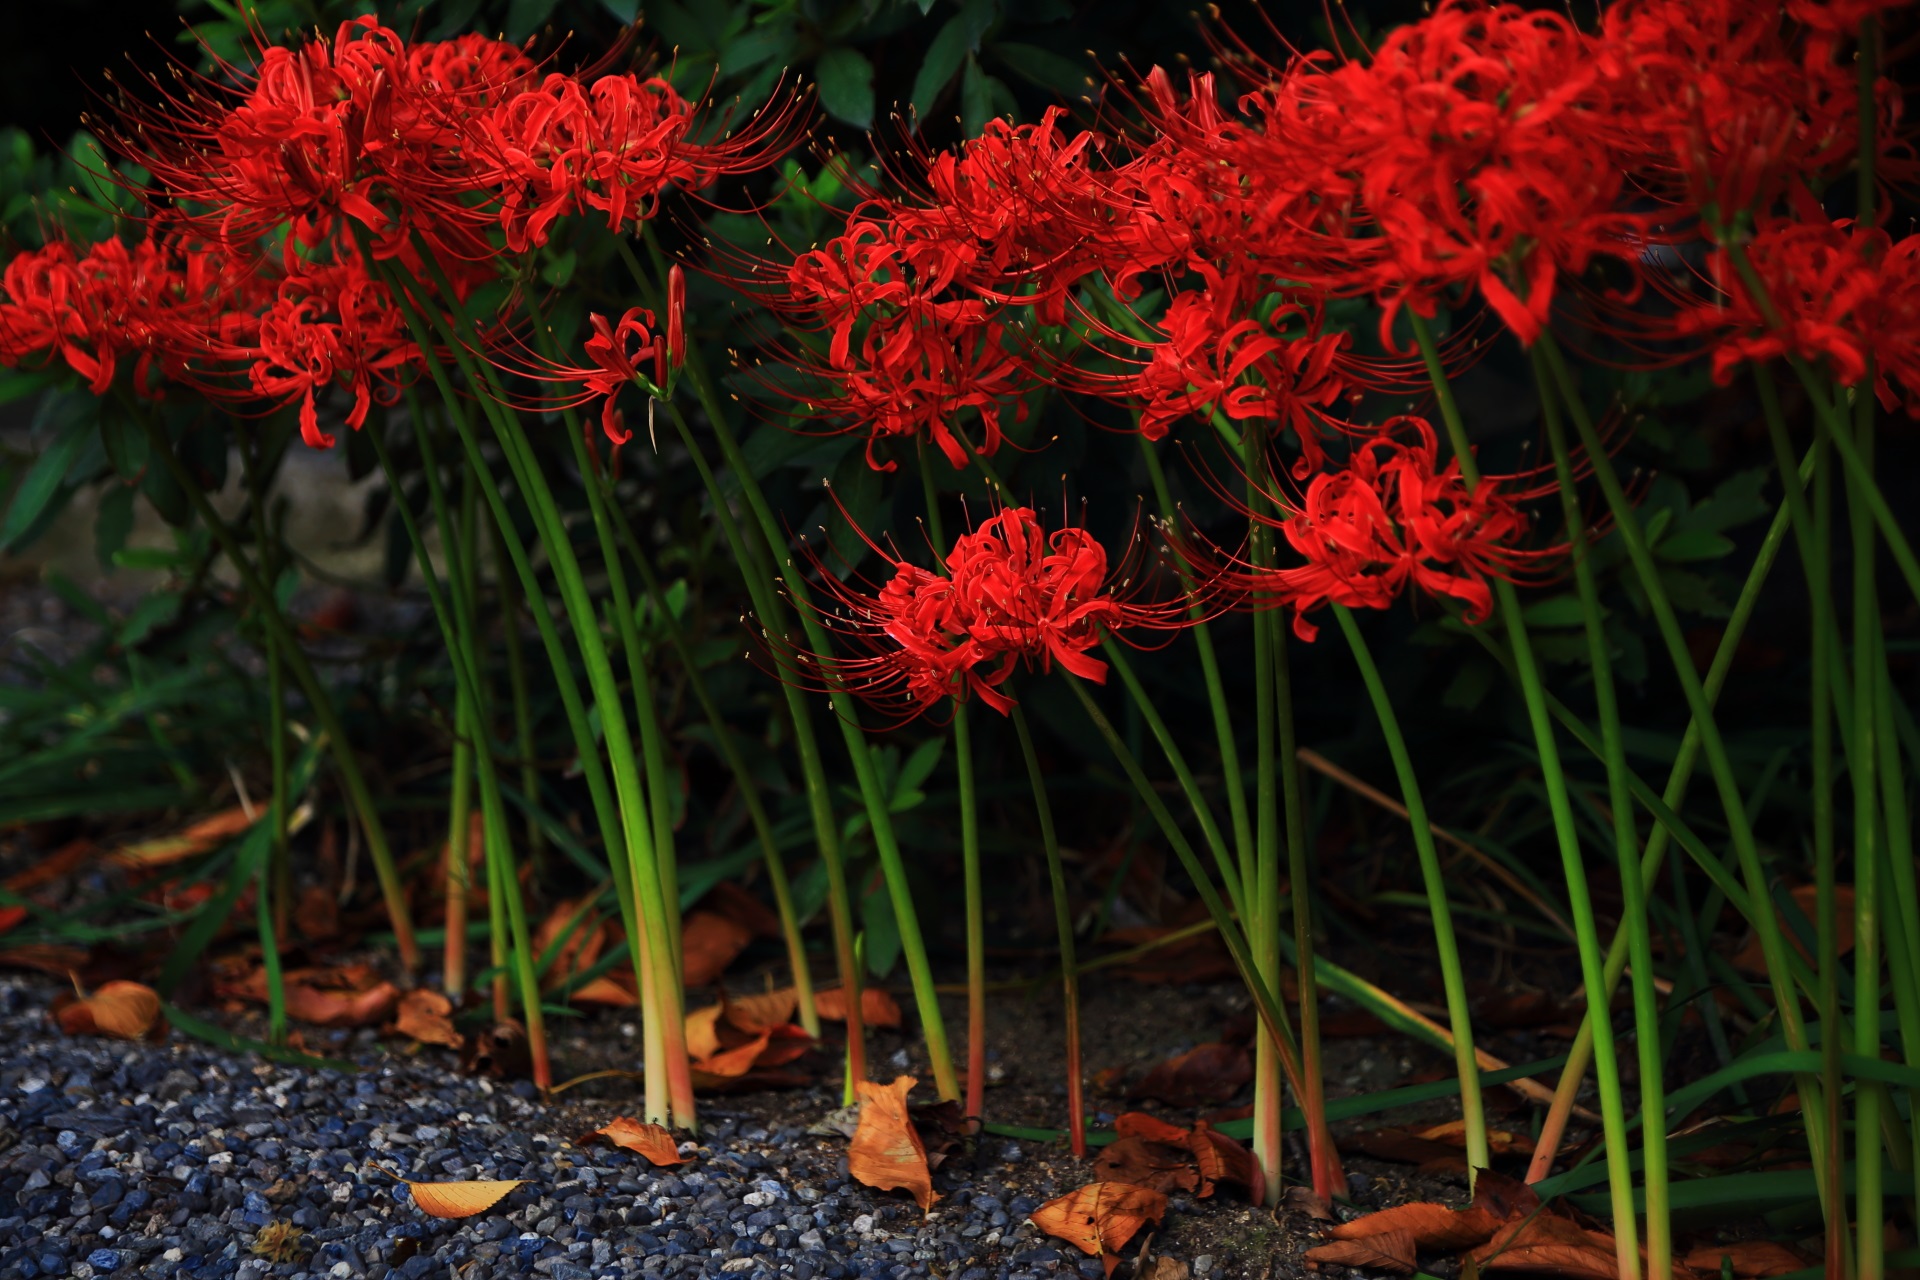 妙蓮寺の寺務所の向かいあたりに咲く彼岸花